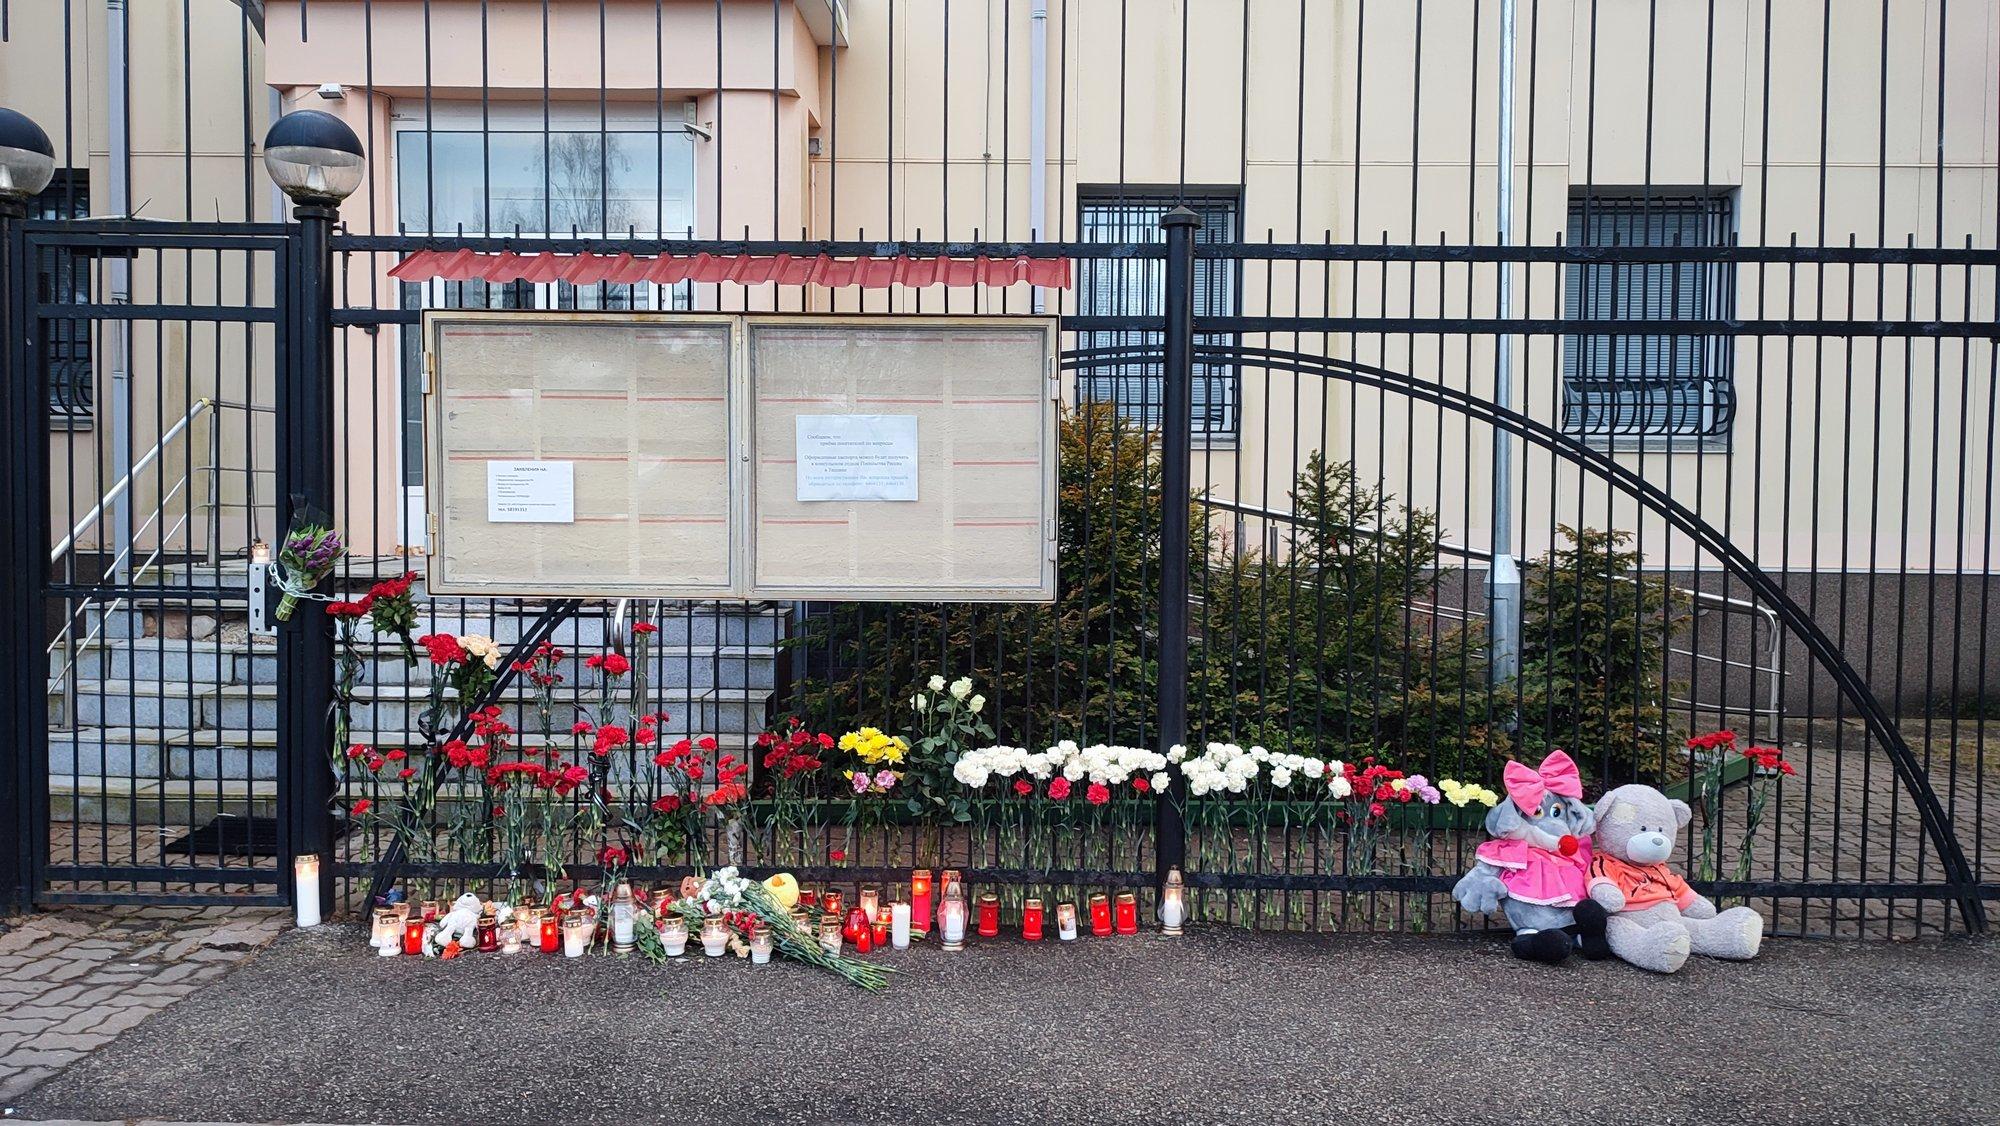 ФОТО | Реакция нарвитян на теракт: к зданию бывшего российского Консульства люди несут цветы, игрушки, зажигают свечи